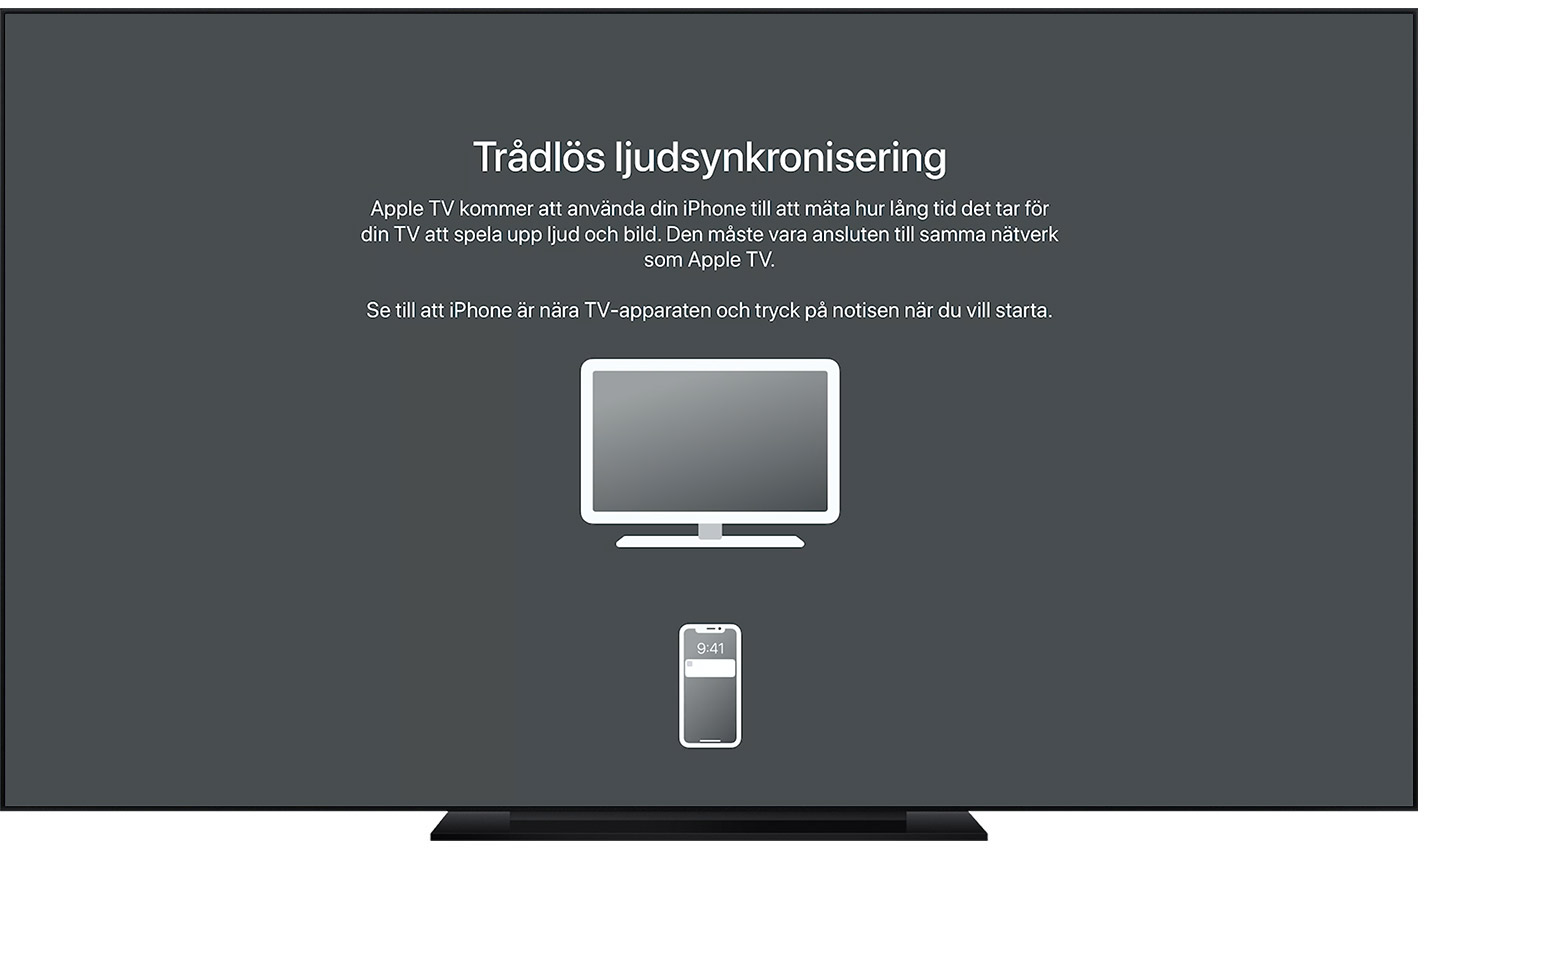 Ställa in trådlös ljudsynkronisering med Apple TV - Apple-support